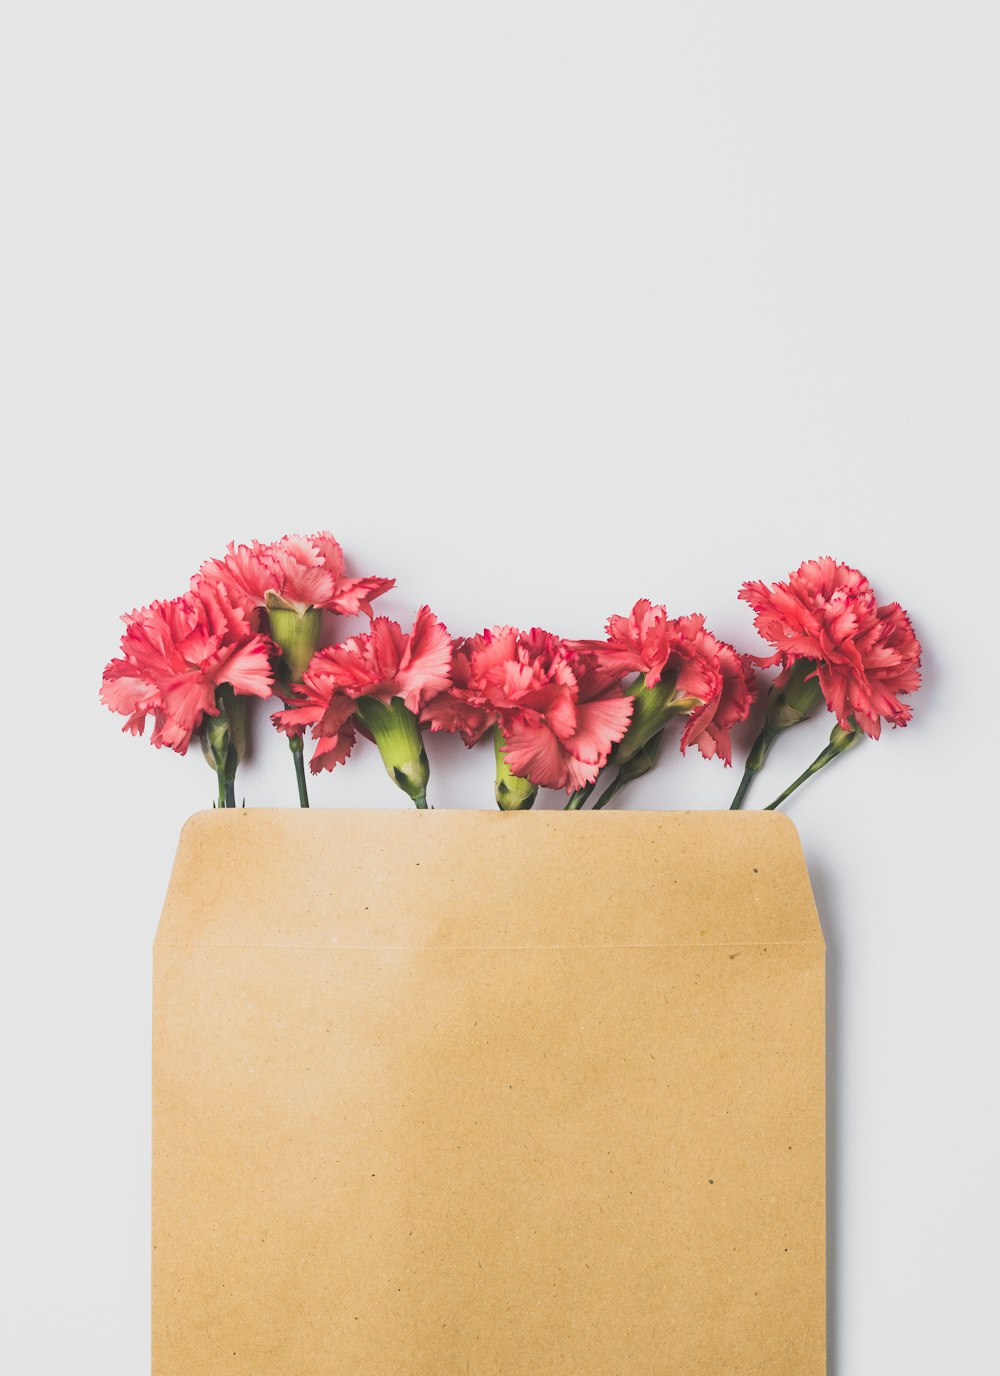 rosas cor-de-rosa no saco de papel marrom